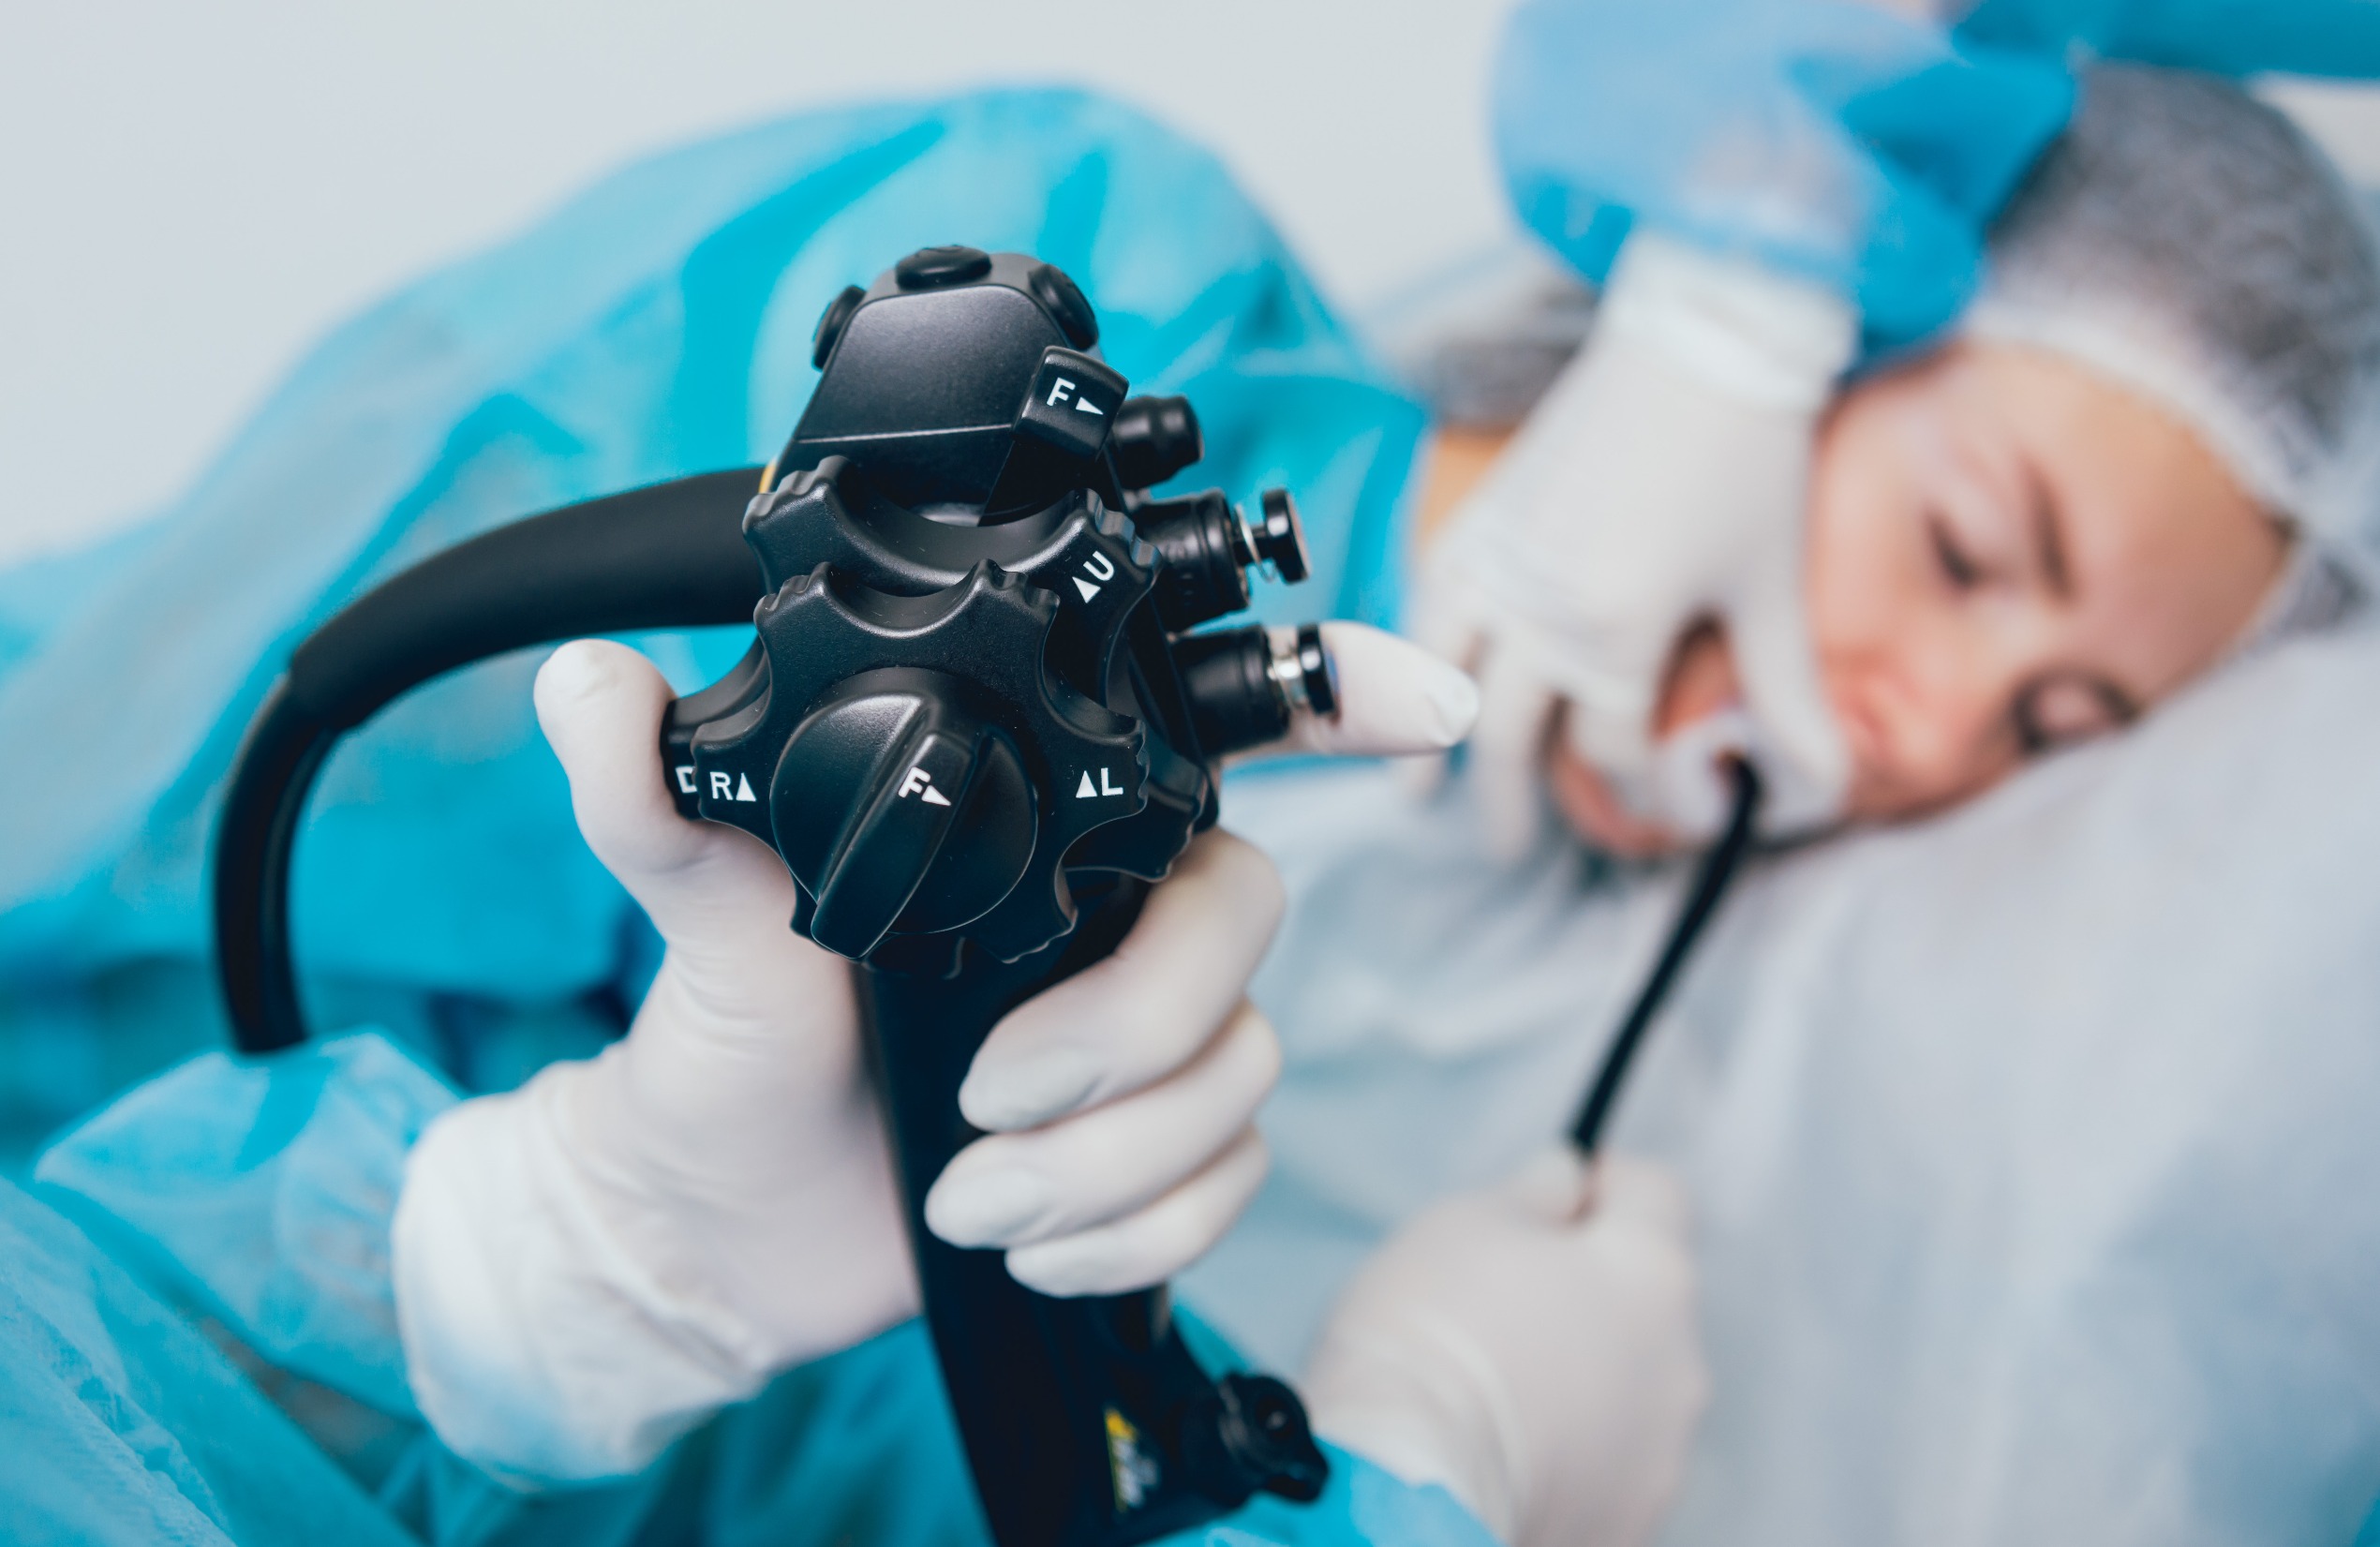 Imagen: Se encontró que la videolaringoscopia reduce significativamente la cantidad de intentos necesarios para lograr la intubación (Fotografía cortesía de 123RF)